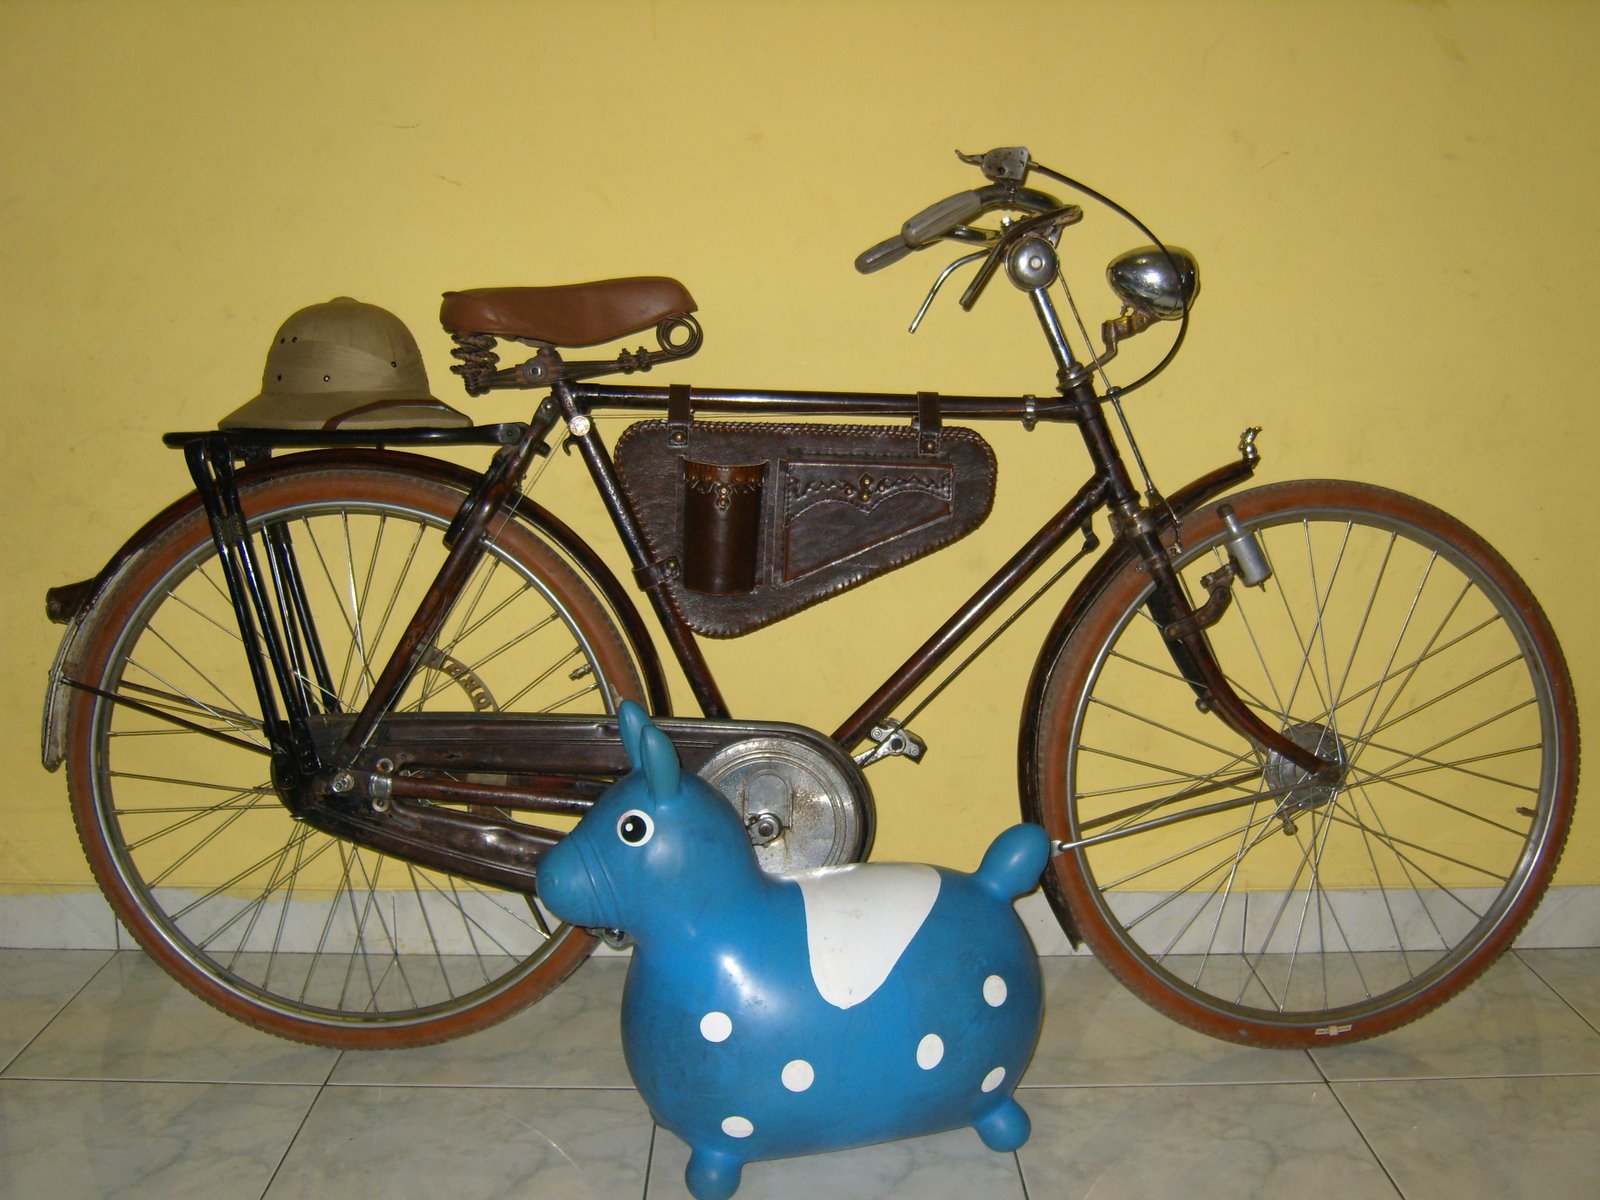 Pameran Sepeda Antik Driwancybermuseums Blog